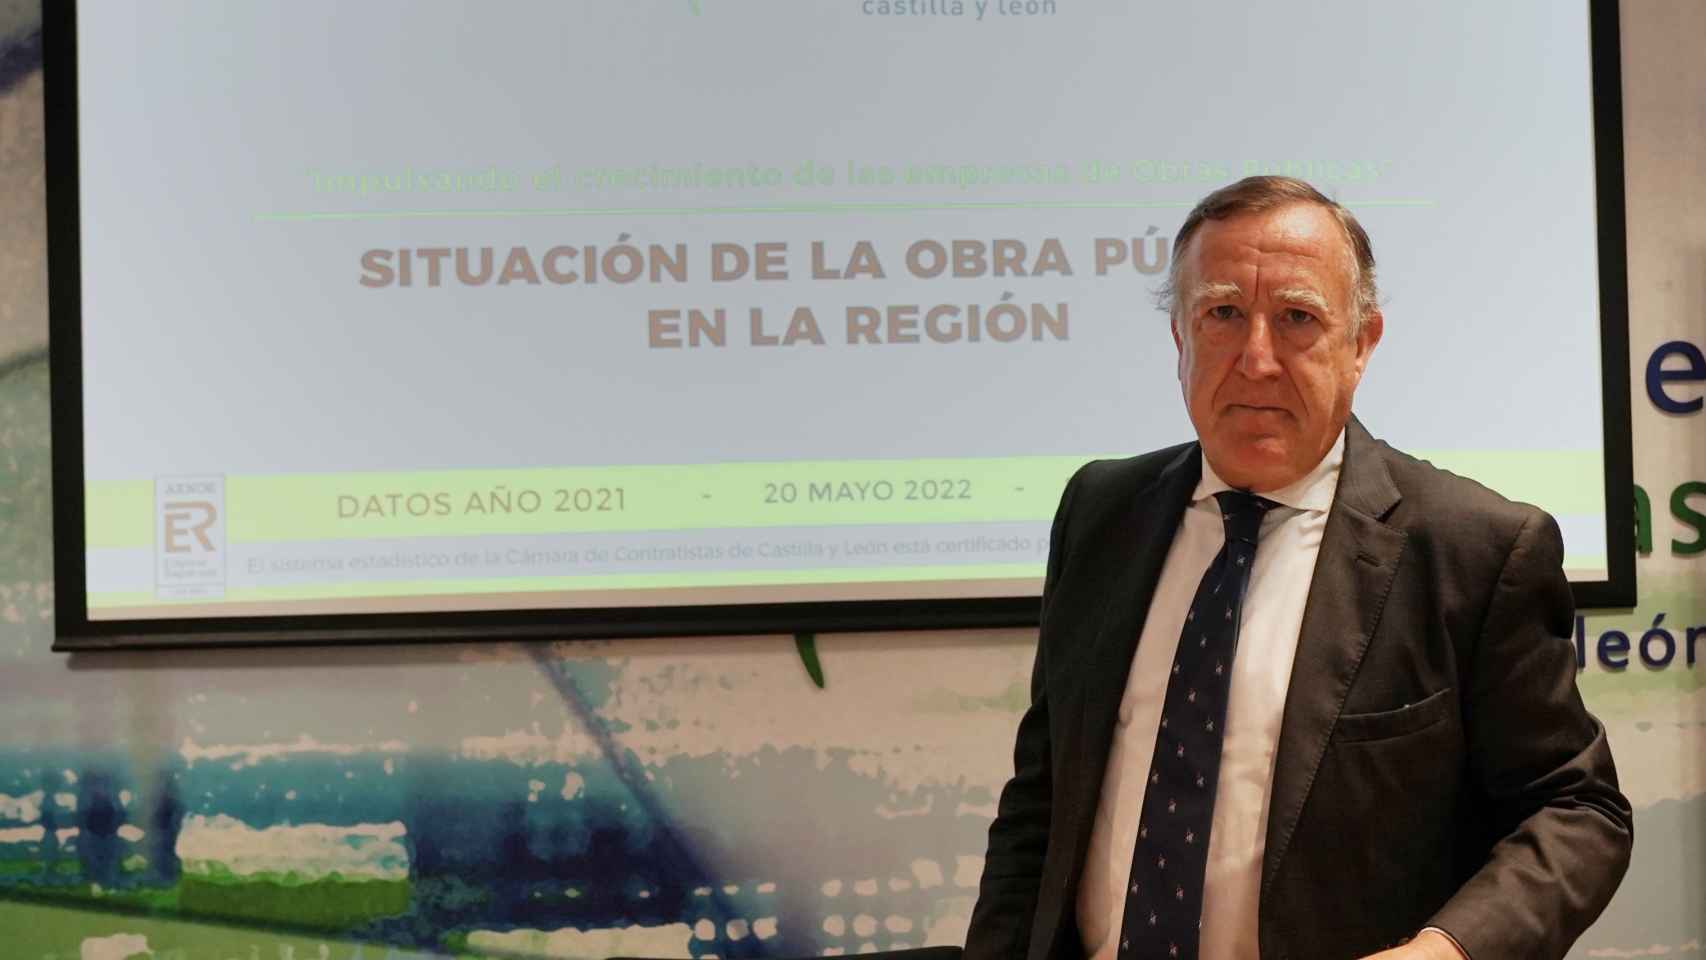 El presidente de la Cámara de Contratistas de Castilla y León, Enrique Pascual Gómez, presenta el balance de la licitación de obra oficial en CyL durante 2021 y las previsiones para 2022